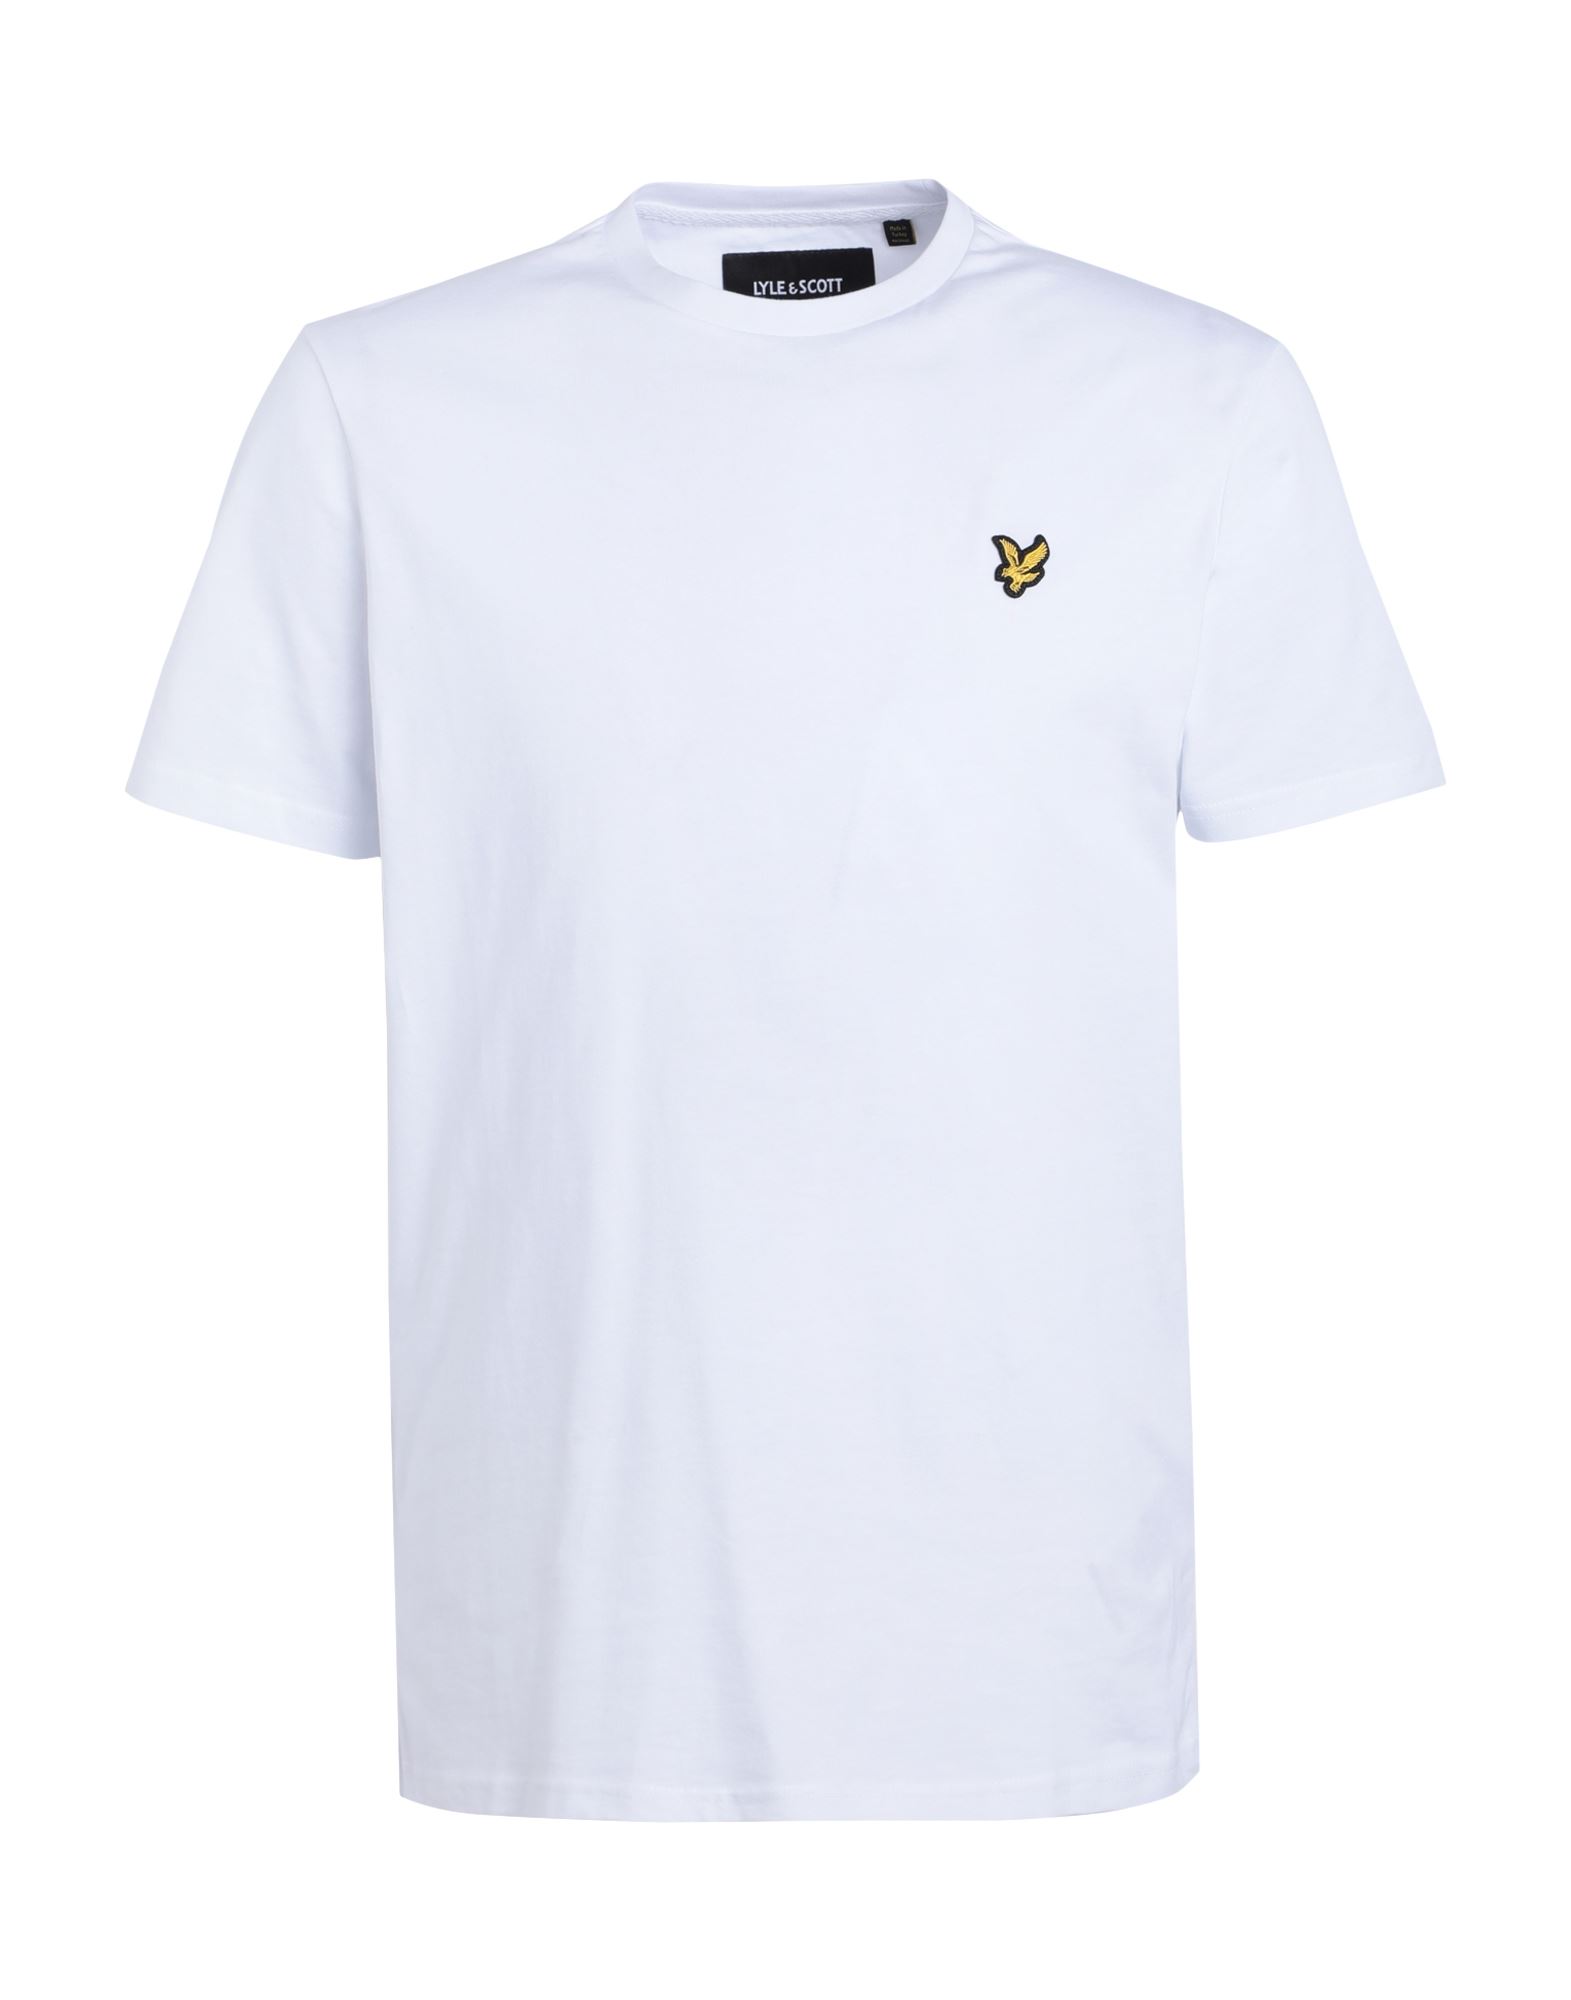 Lyle & Scott Man T-shirt White Size Xs Cotton